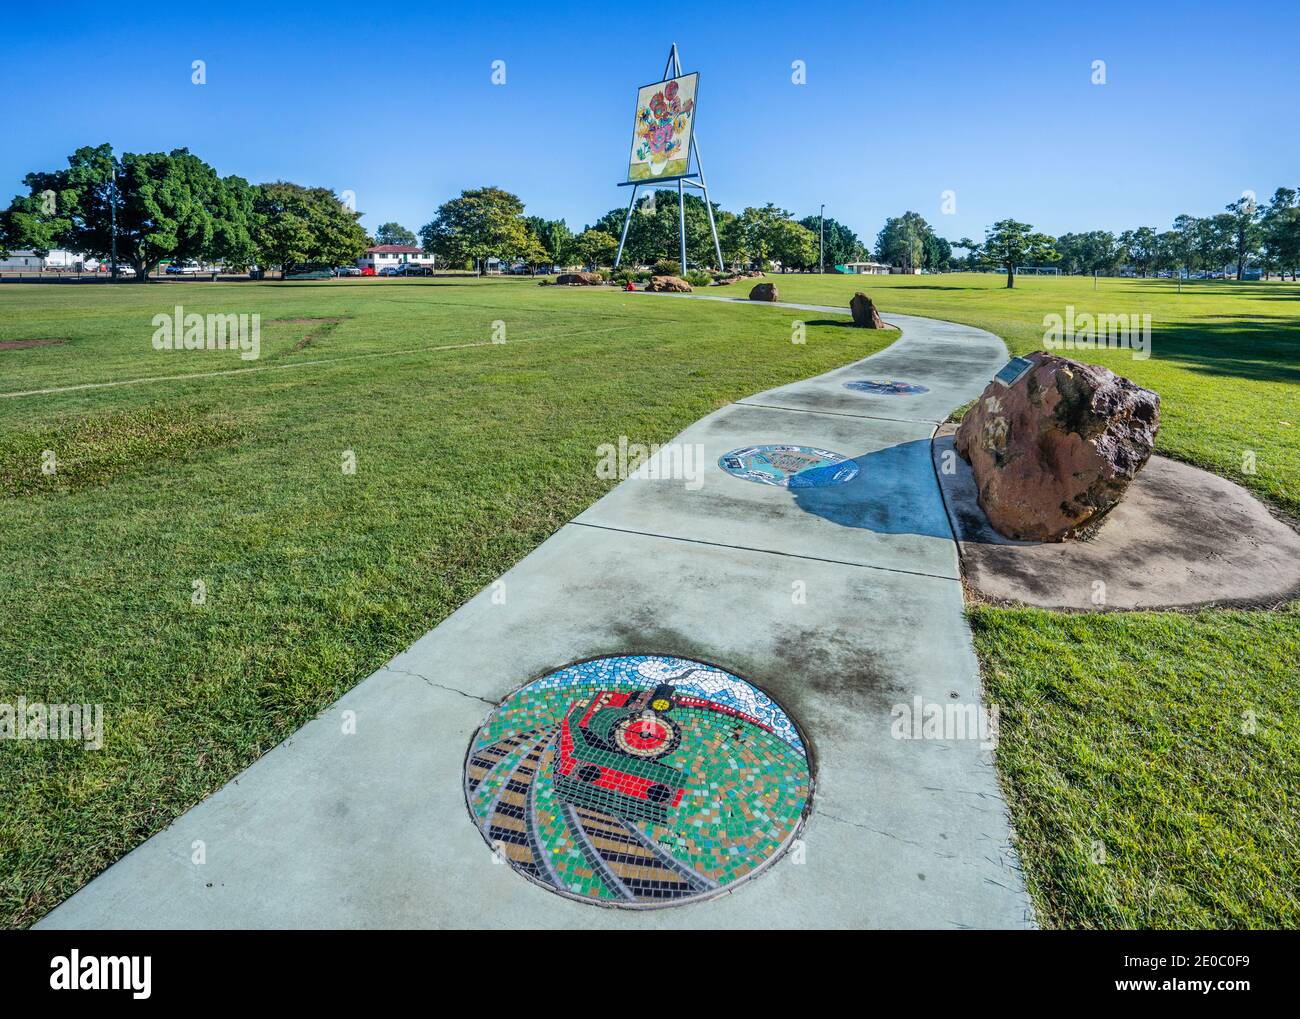 Centenaire de l'Émeraude de la fédération Mosaïque Pathway et le Giant Van Gogh Sunflower sur le Big Easel à Morton Park, Emerald, région des Hautes-terres centrales, Qu Banque D'Images